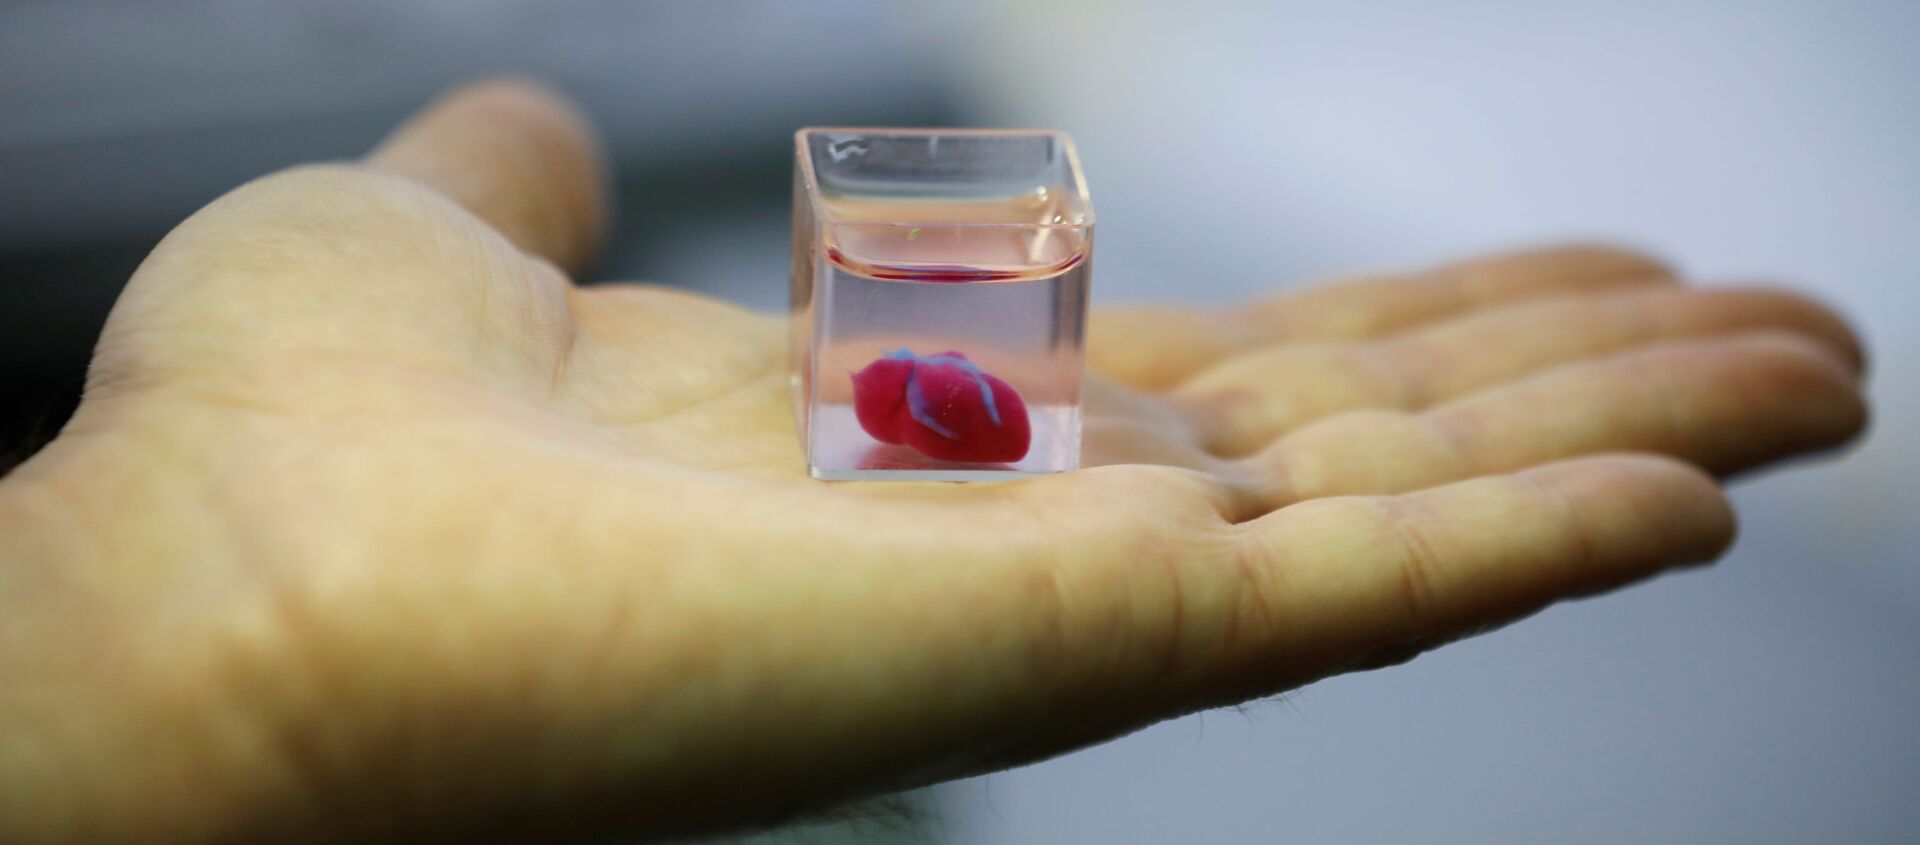 Первое в мире живое сердце, напечатанное на 3D-принтере во время демонстрации в лаборатории, Тель-Авив, Израиль - Sputnik Узбекистан, 1920, 19.04.2019